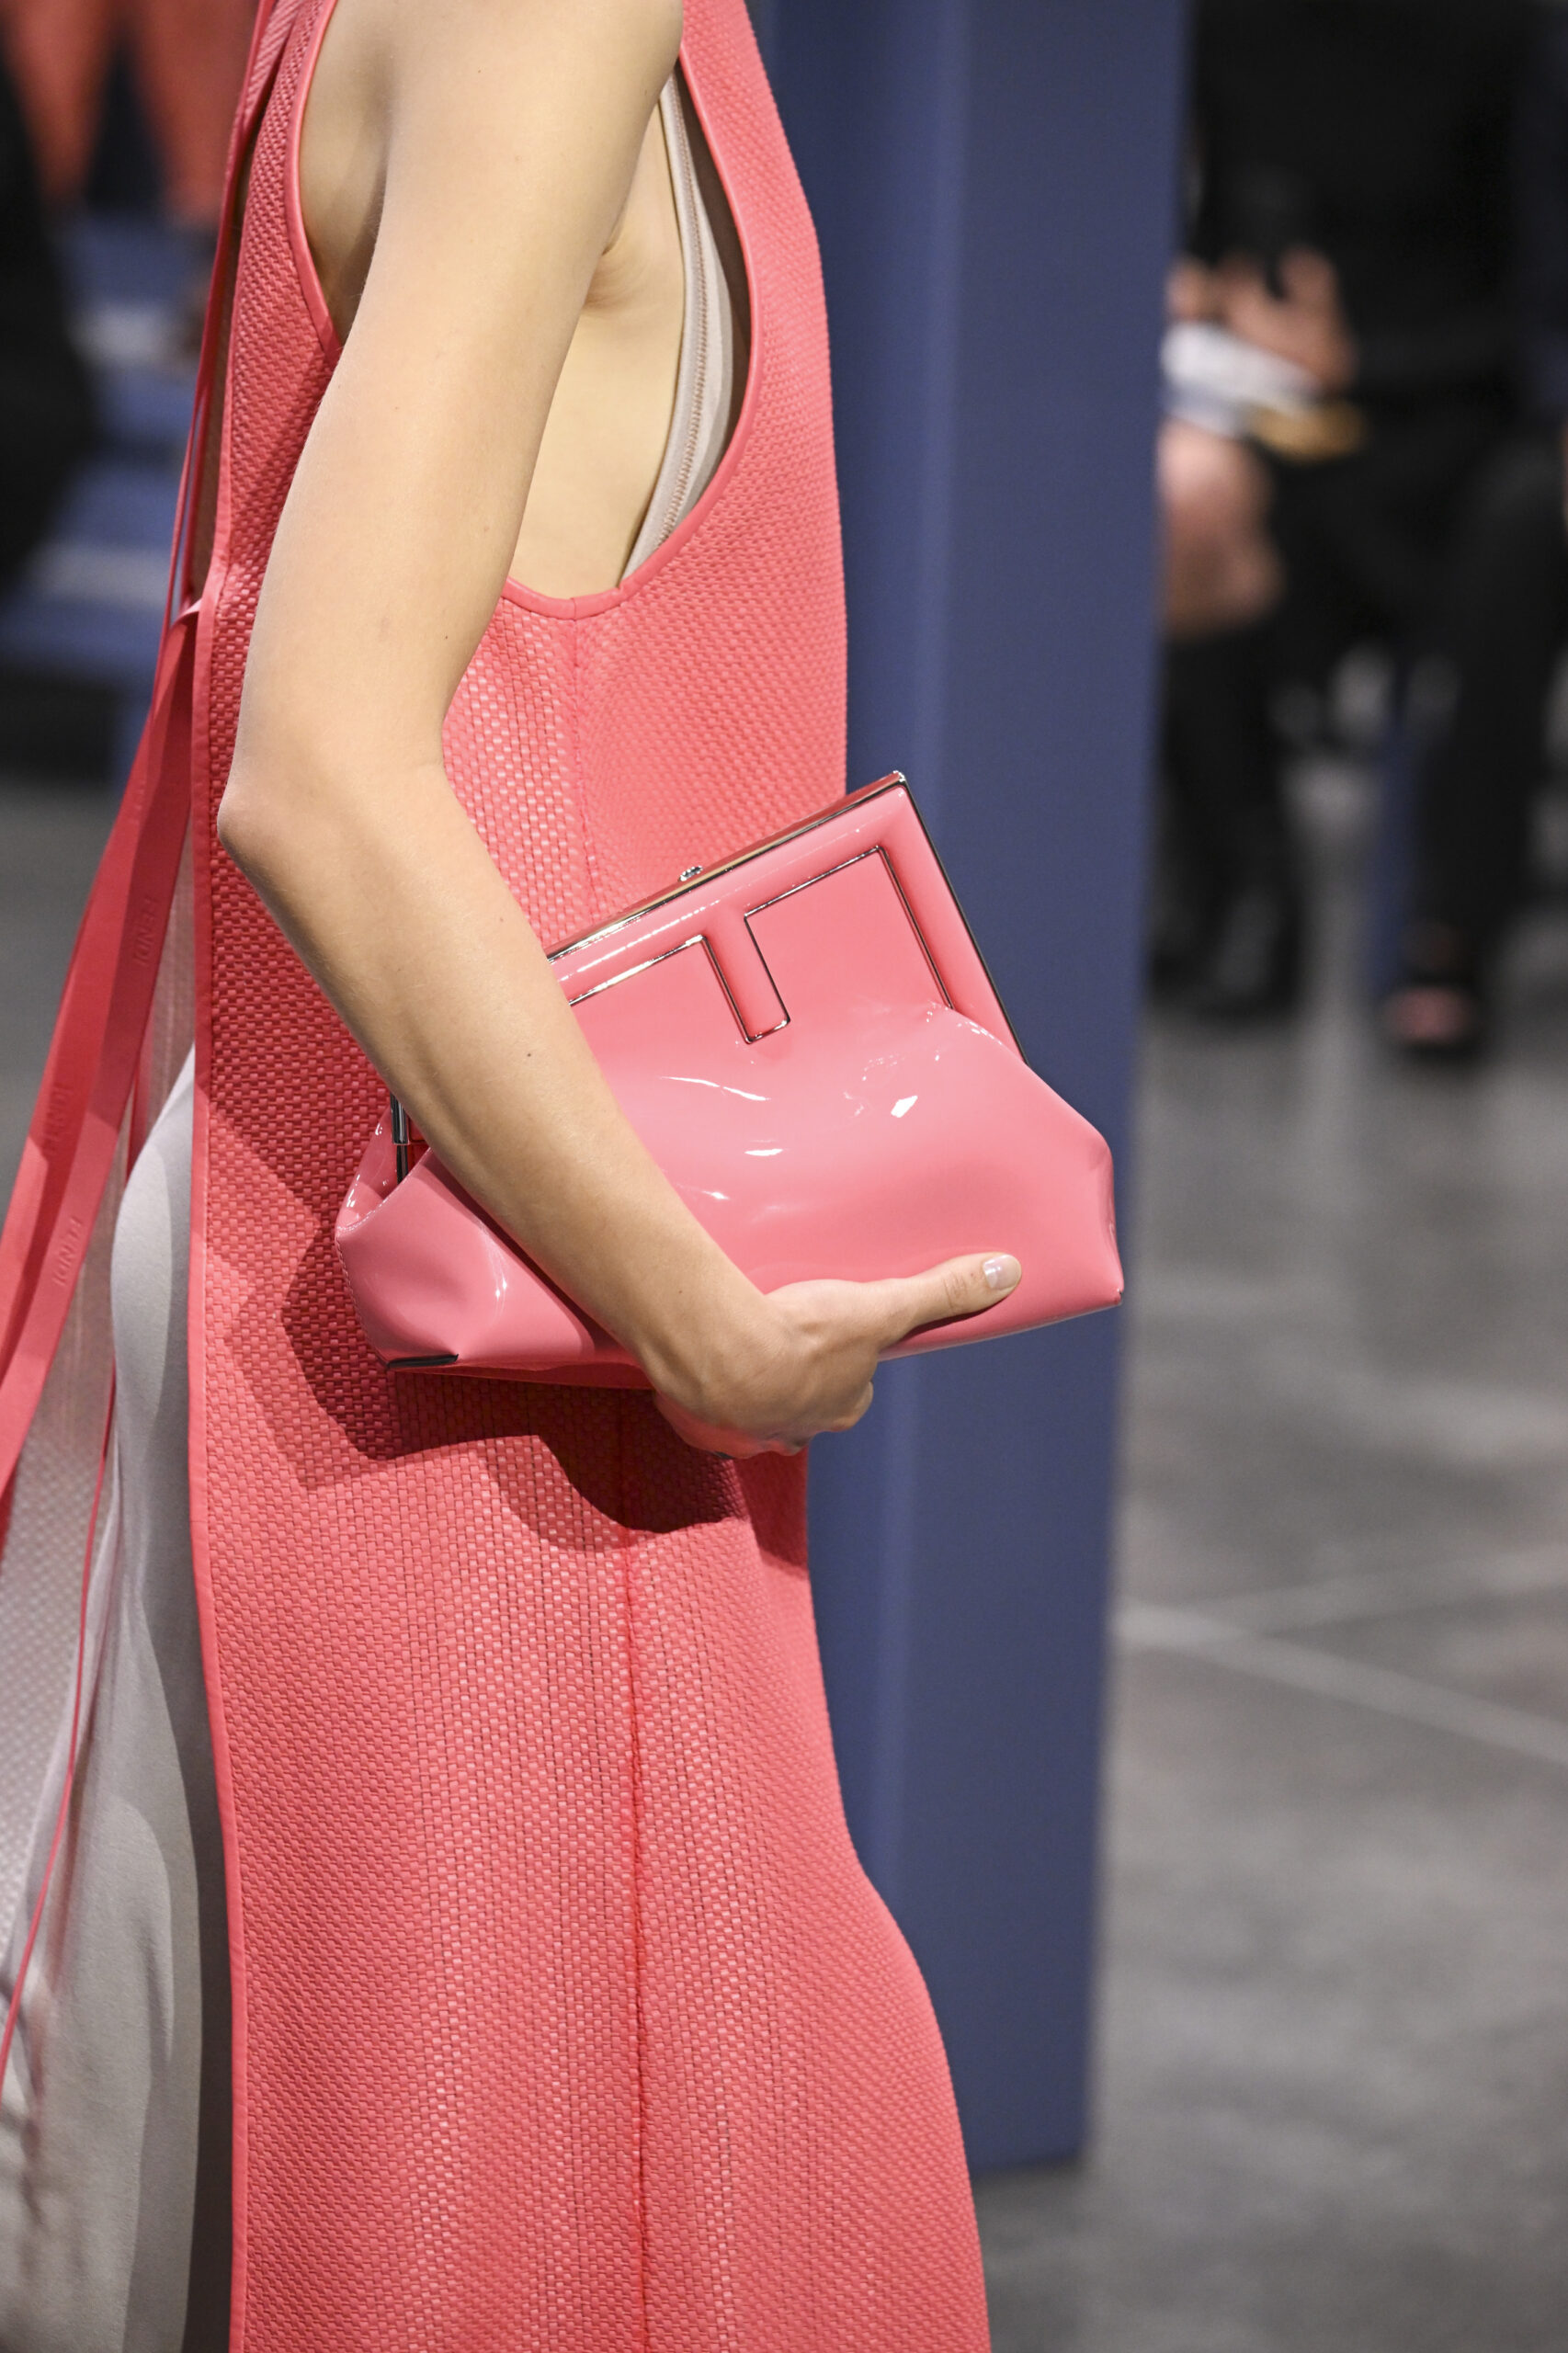 růžová kabelka, růžová kabelka do ruky, kabelka držená v ruce